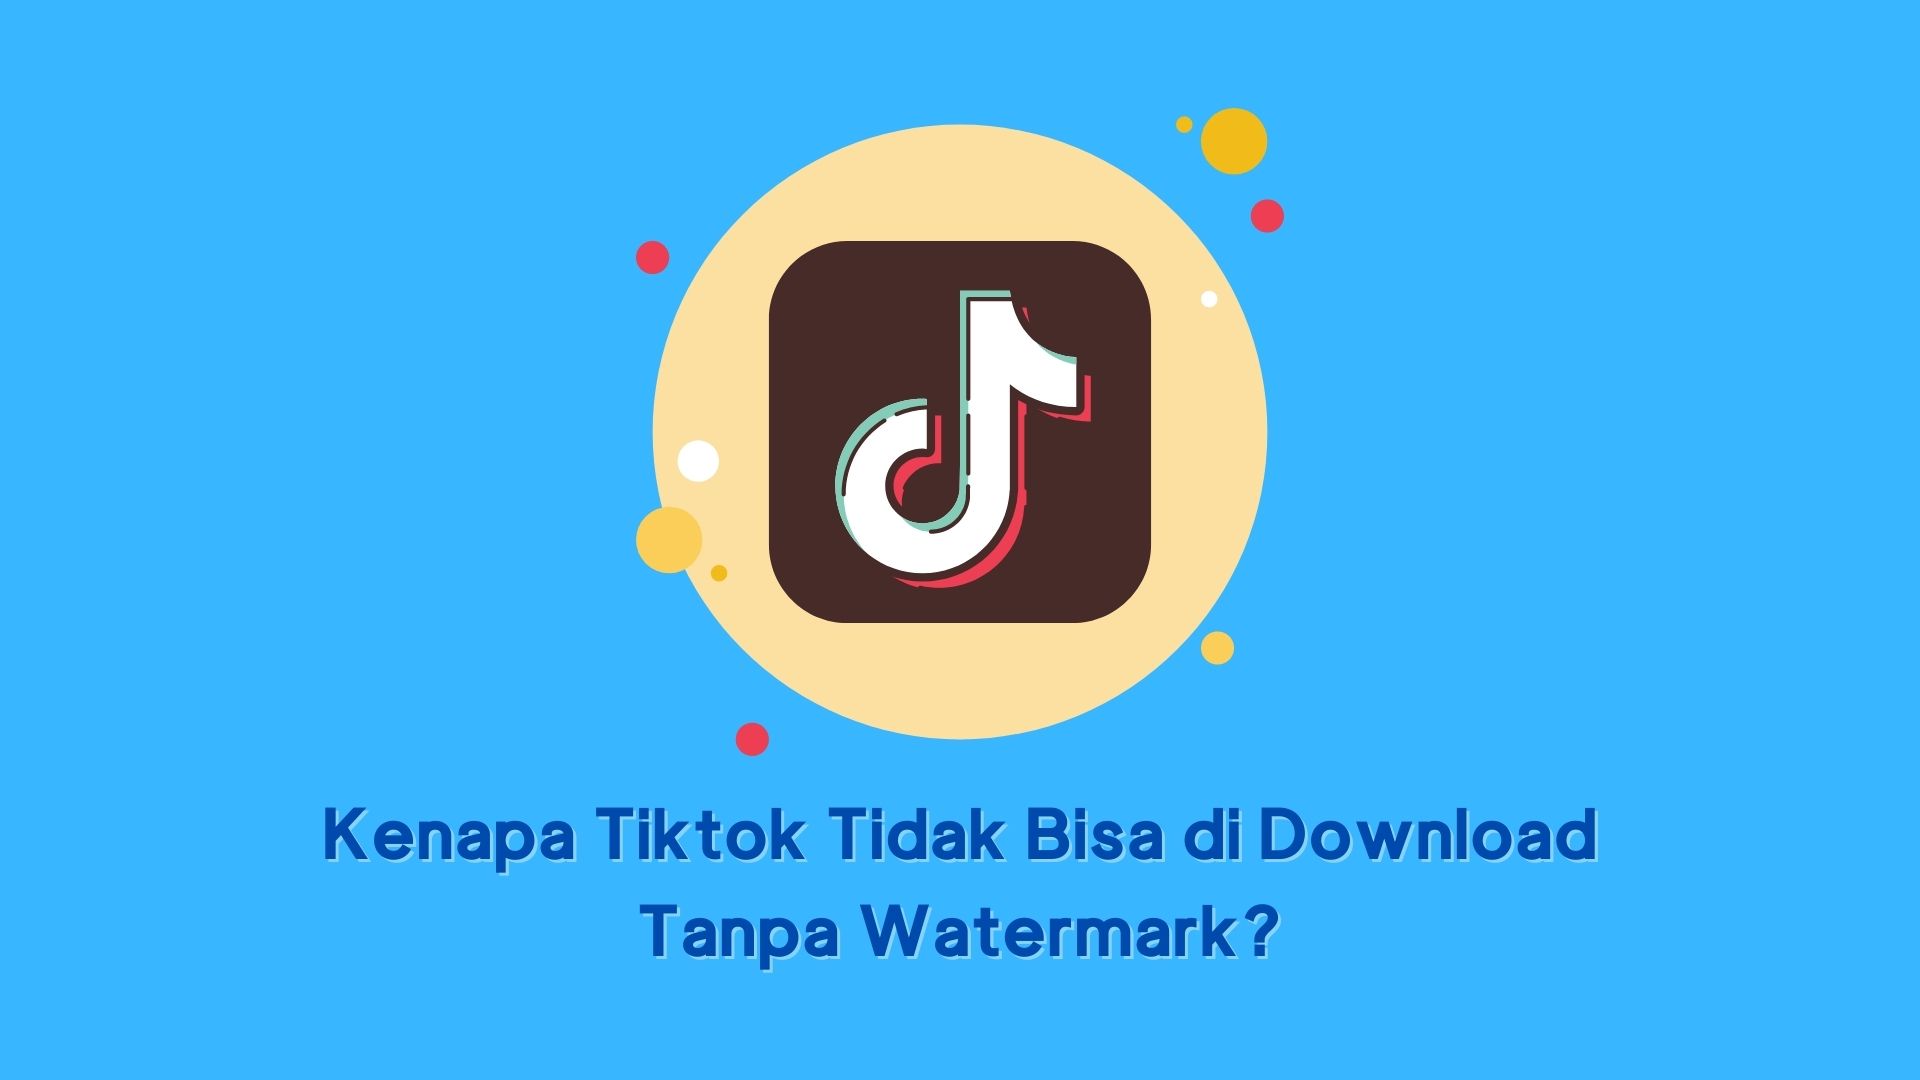 Kenapa Tiktok Tidak Bisa Di Download. Kenapa Tiktok Tidak Bisa di Download Tanpa Watermark?